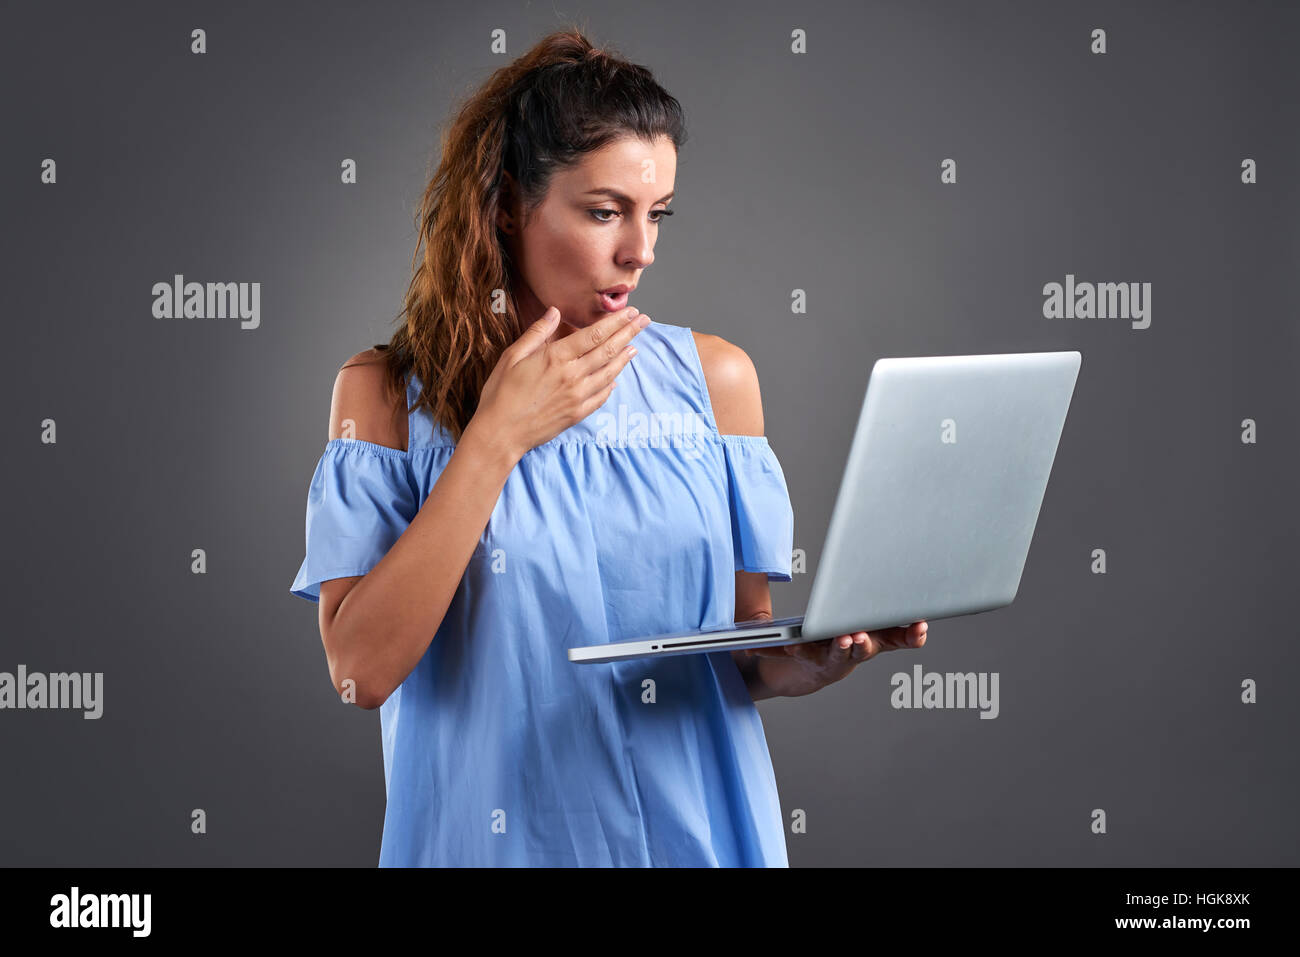 Eine schöne junge Frau stehend und Feelling überrascht beim Betrachten eines Laptops in der Hand. Stockfoto